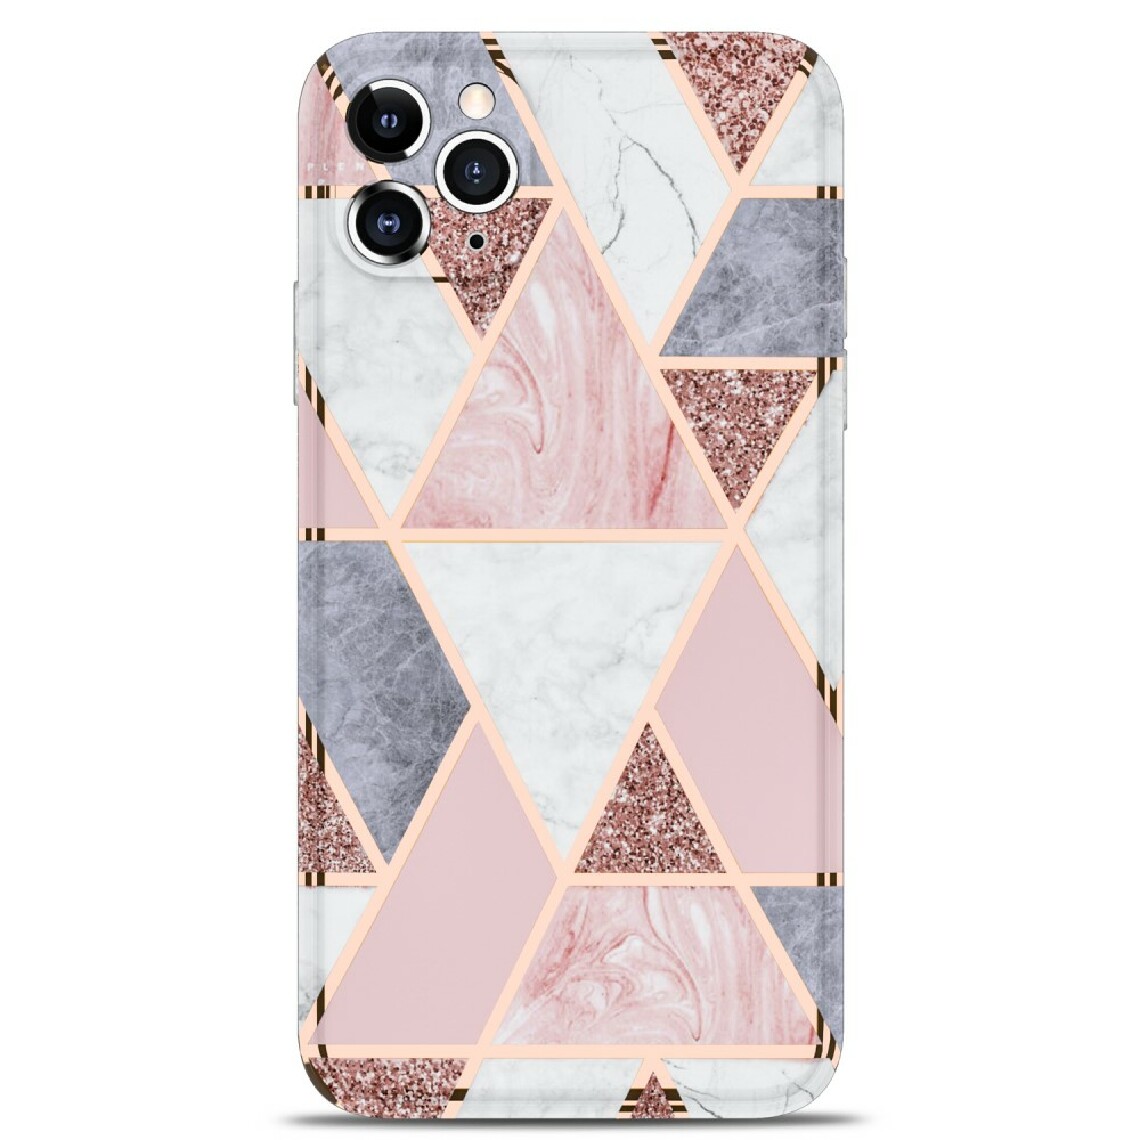 Other - Coque en TPU impression de motif de marbre d'épissage de bord droit de galvanoplastie rose pour votre Apple iPhone 11 Pro - Coque, étui smartphone